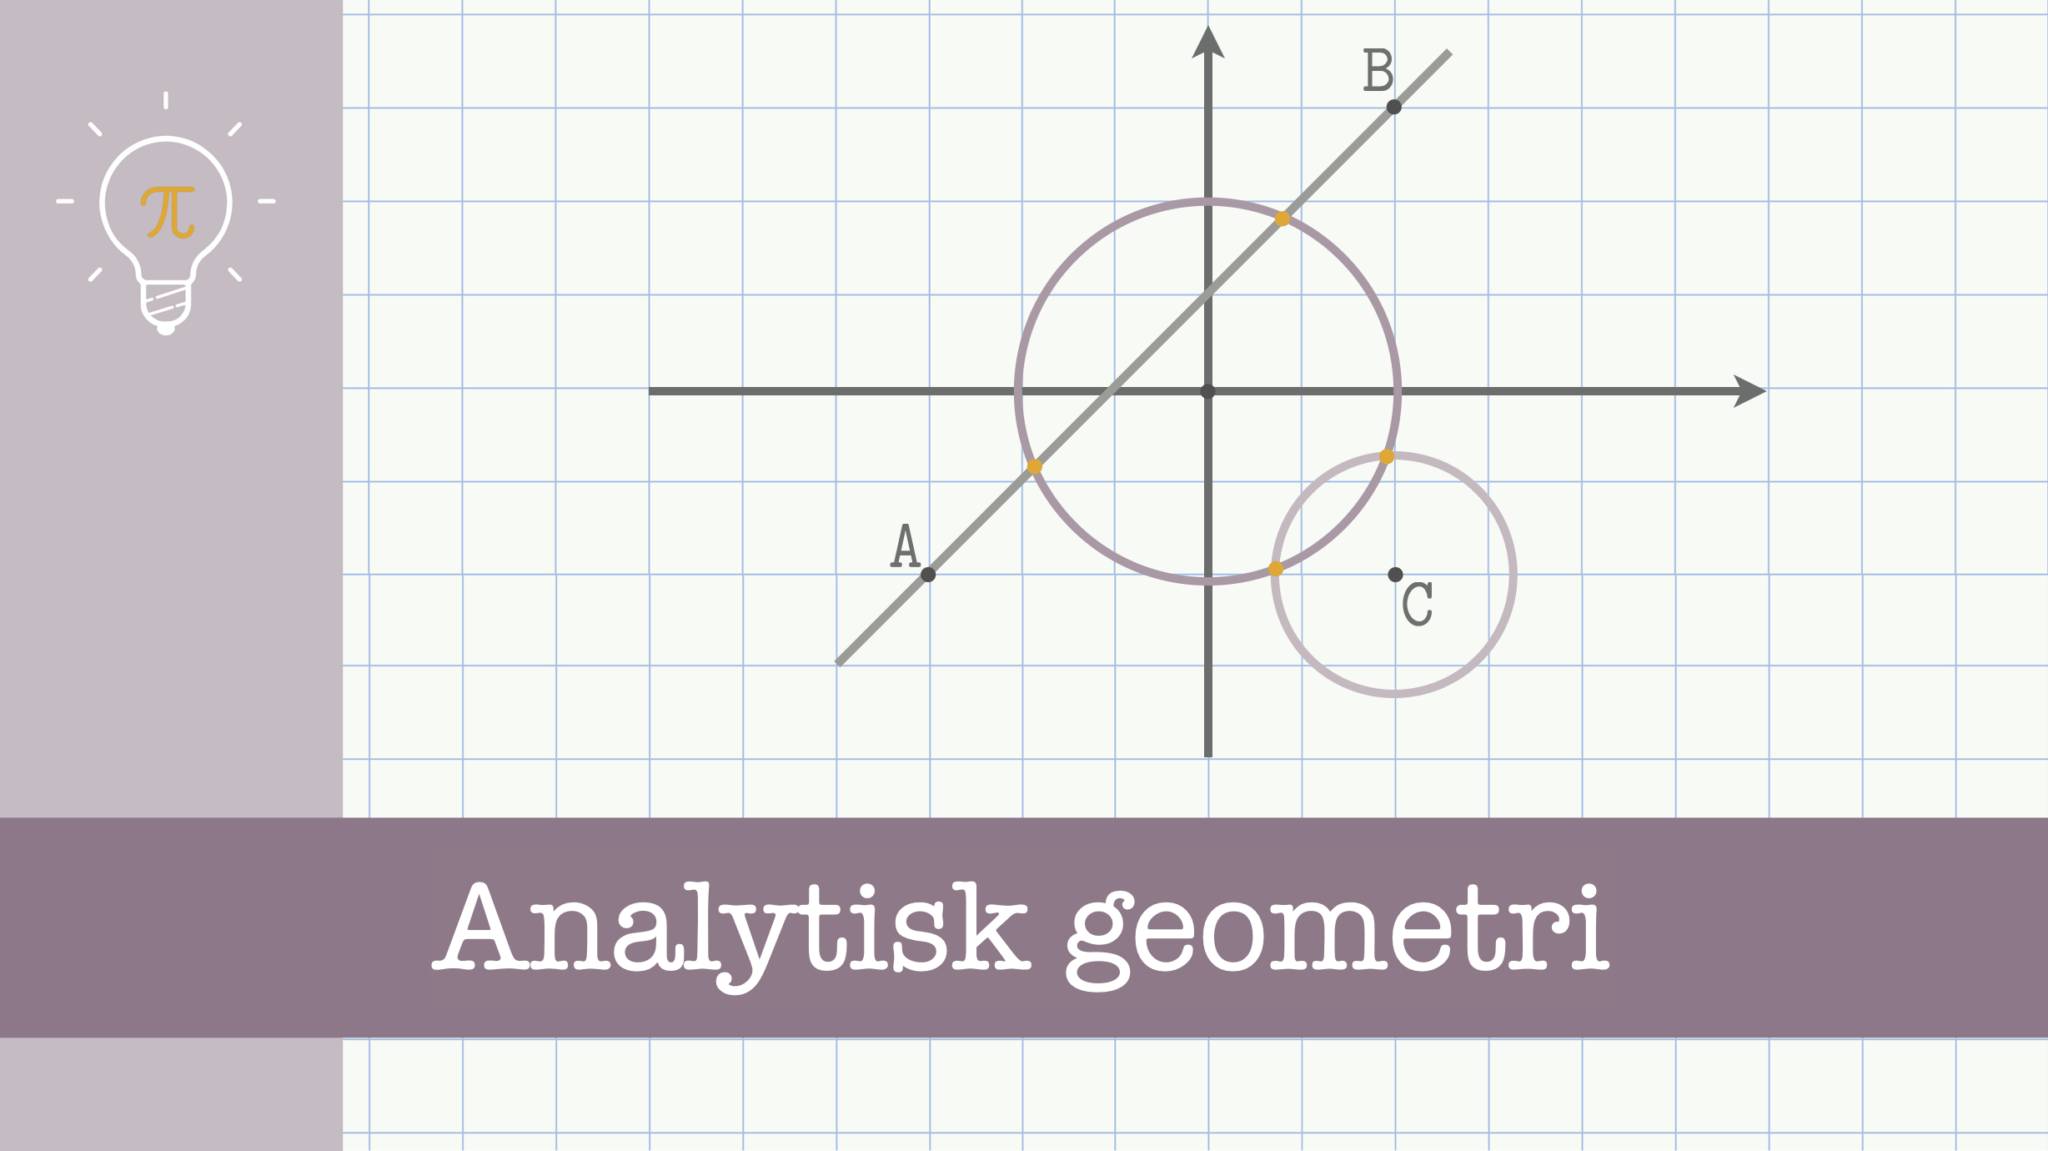 Analytisk geometri